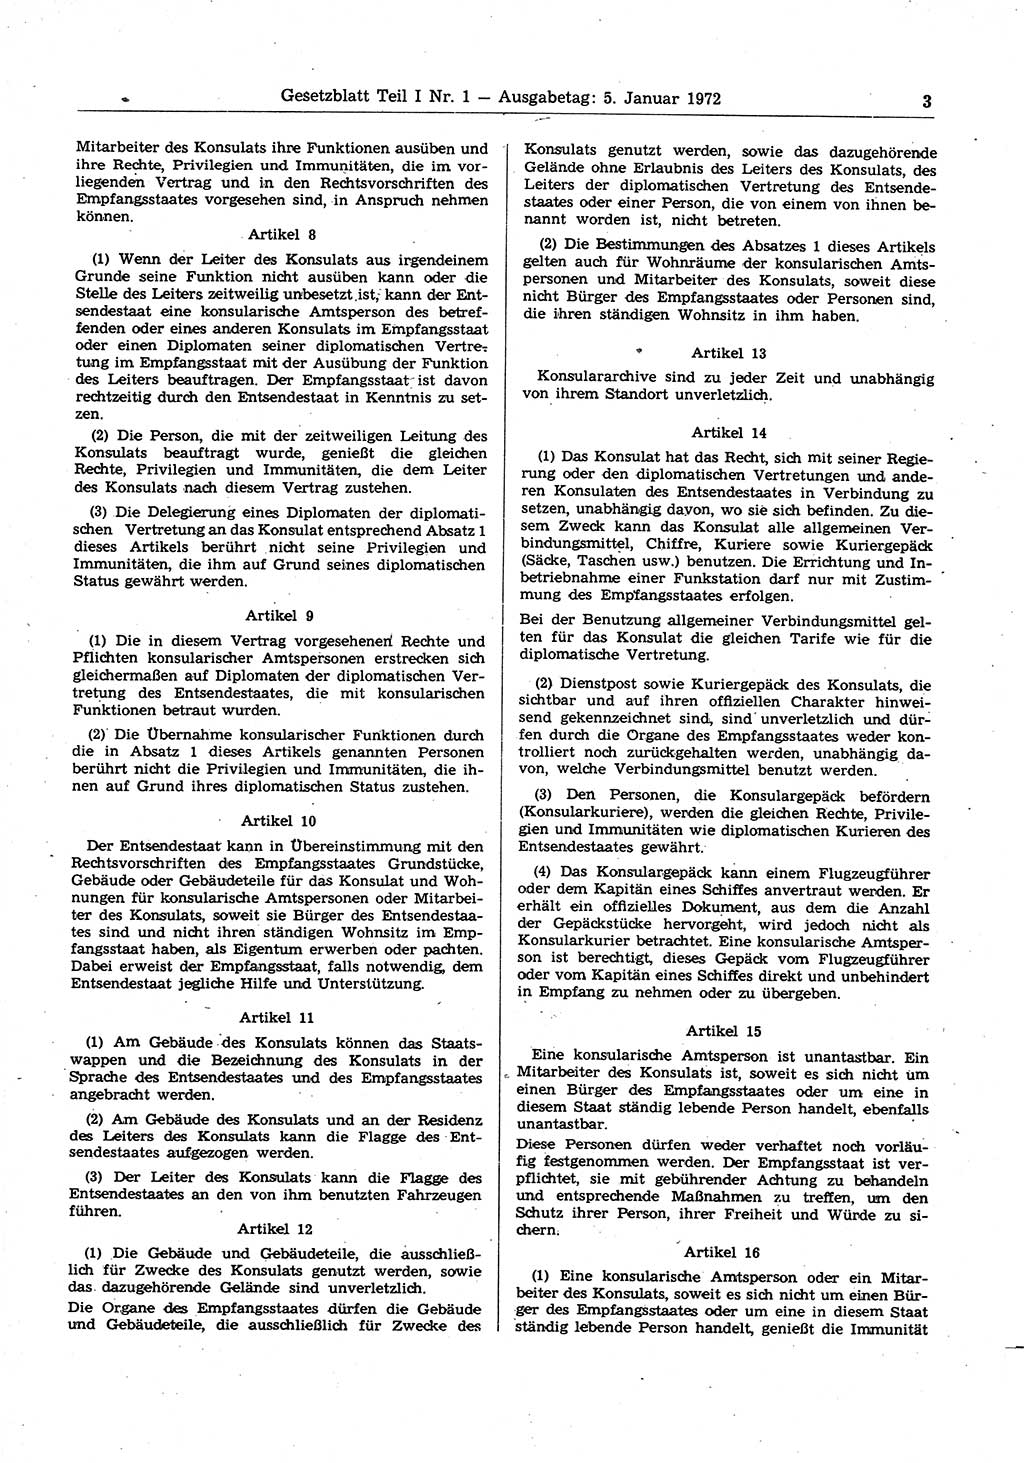 Gesetzblatt (GBl.) der Deutschen Demokratischen Republik (DDR) Teil Ⅰ 1972, Seite 3 (GBl. DDR Ⅰ 1972, S. 3)